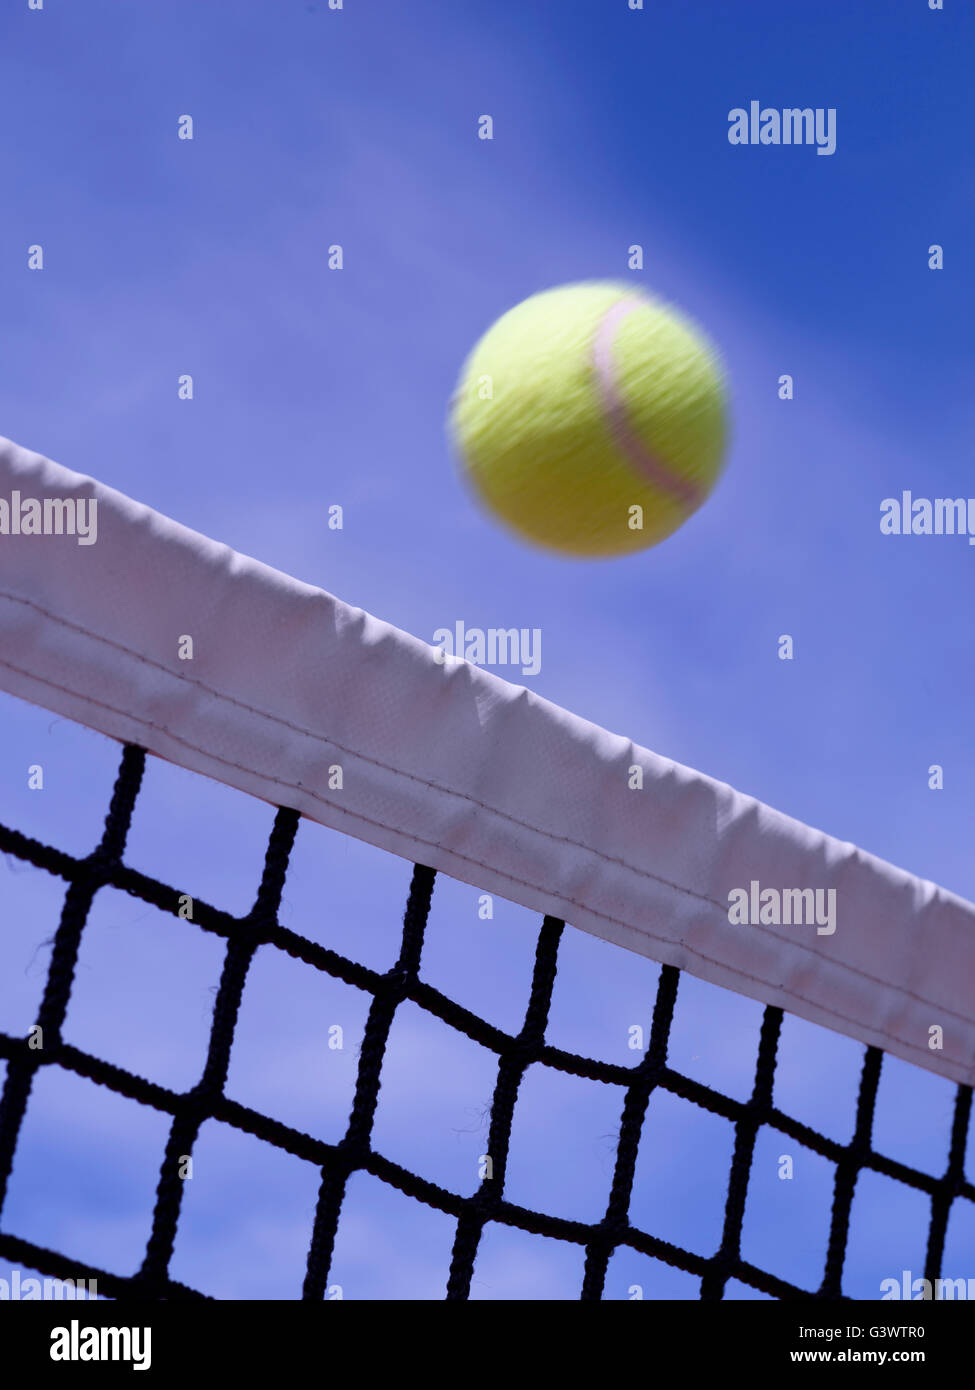 Gros plan d'une balle de tennis paddle o, passant sur le net Banque D'Images